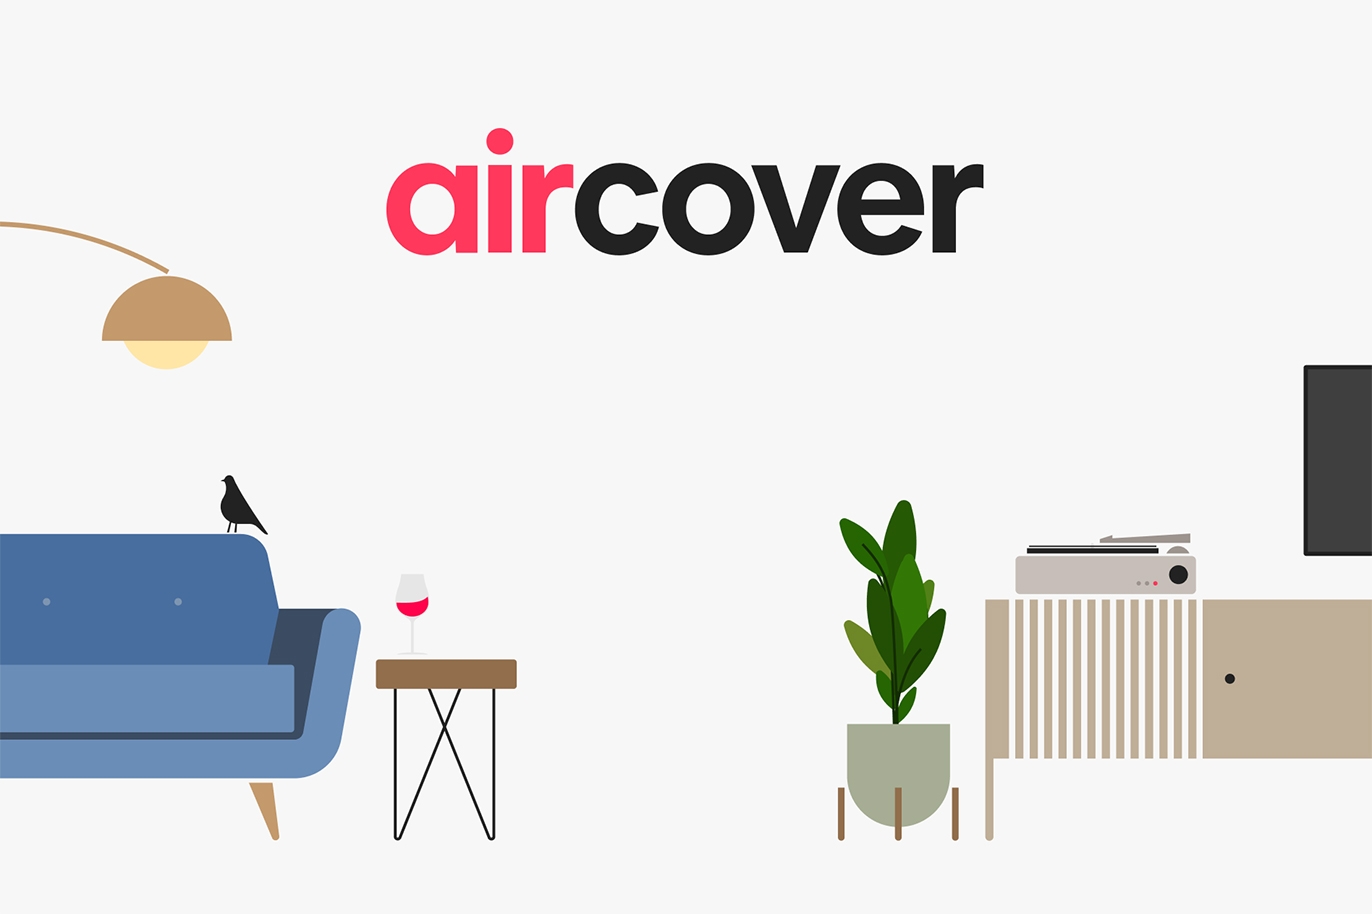 Una ilustración colorida y moderna de artículos encontrados en una casa sobre un fondo blanco abstracto, desde muebles, hasta plantas de interior y electrónica, con la palabra AirCover en el centro.